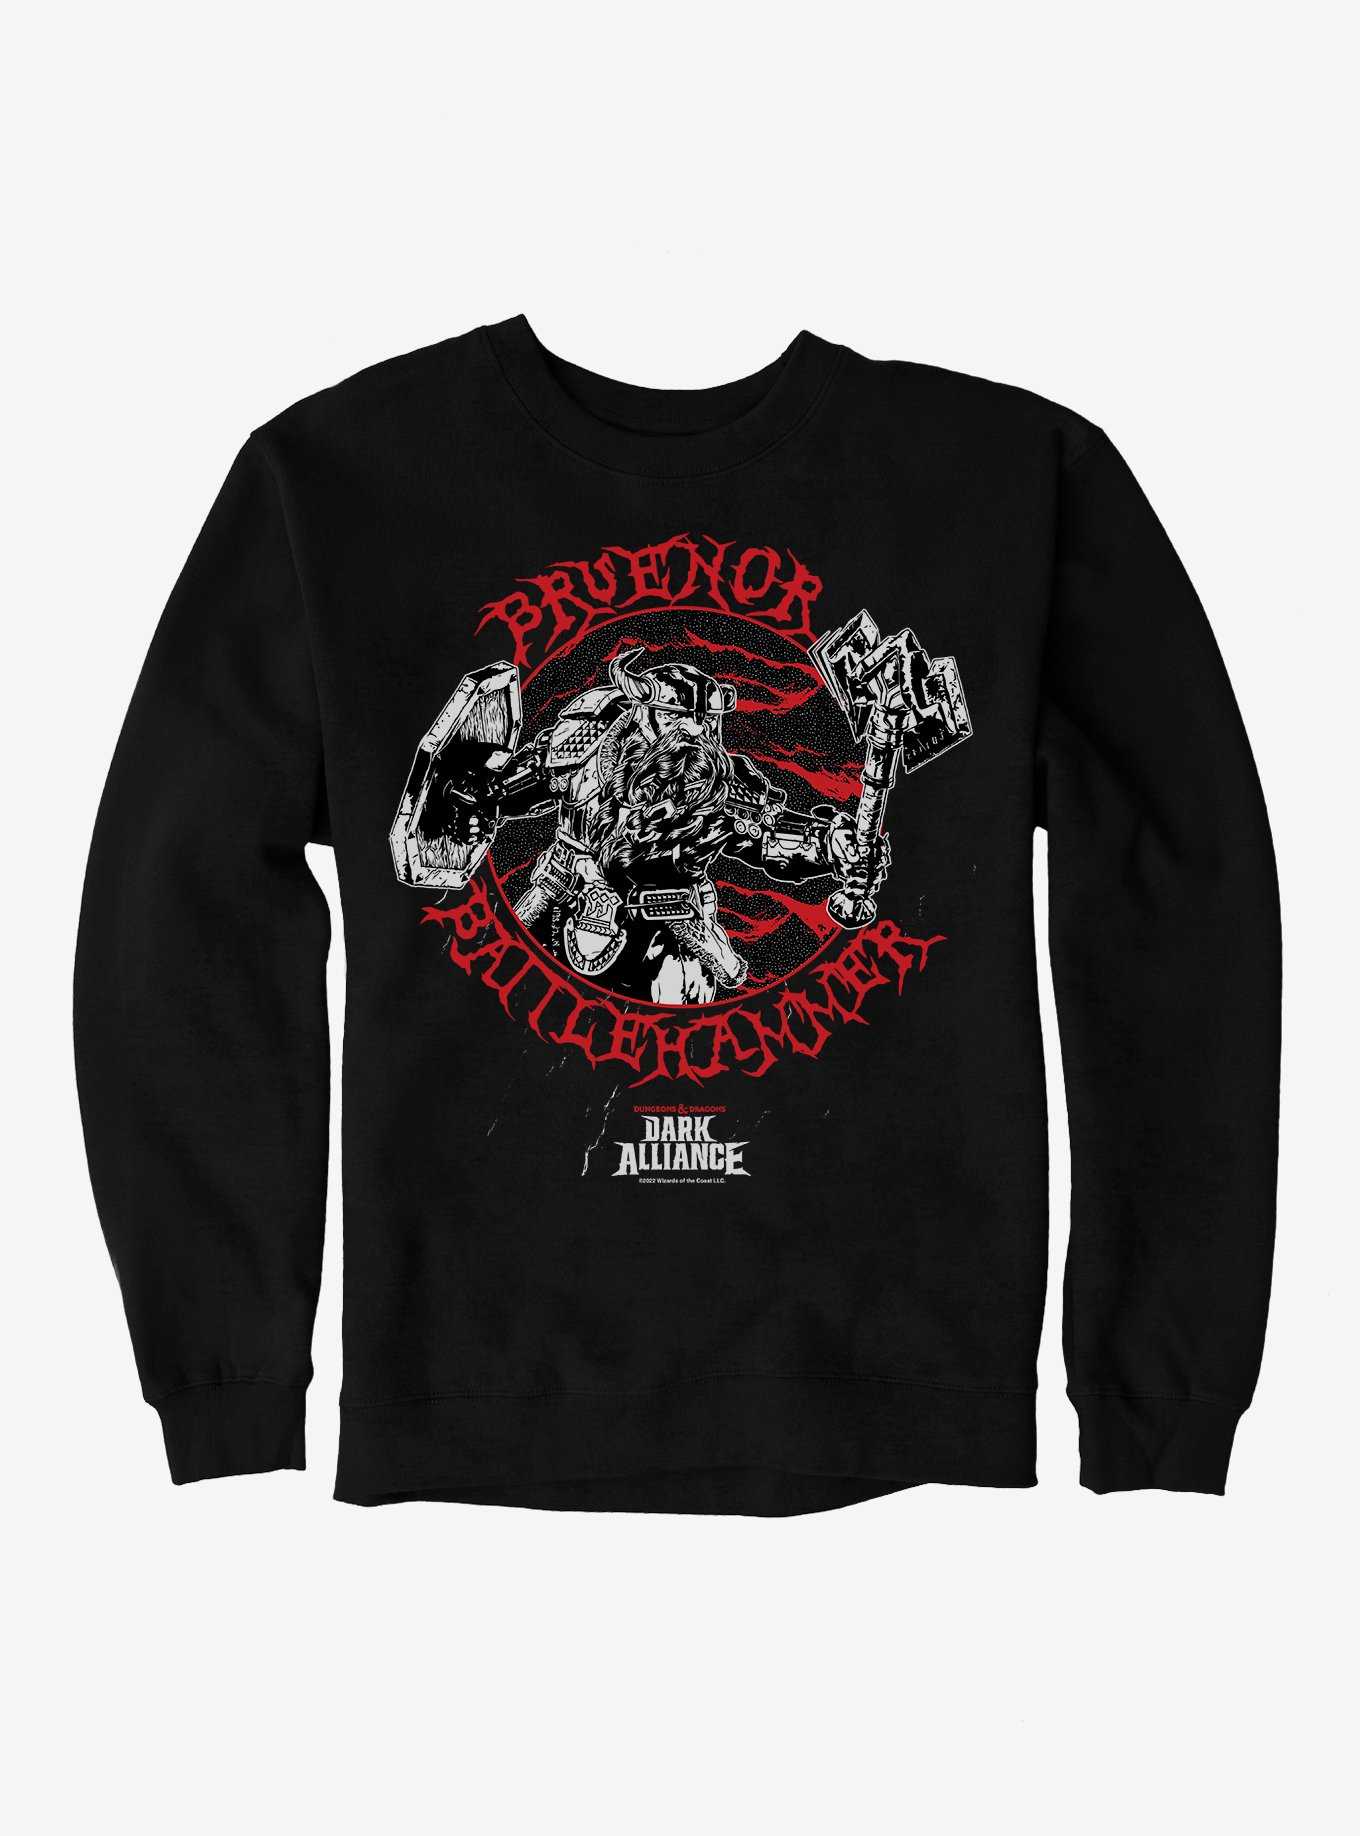 Dungeons & Dragons Dark Alliance Bruenor Battlehammer Sweatshirt, , hi-res